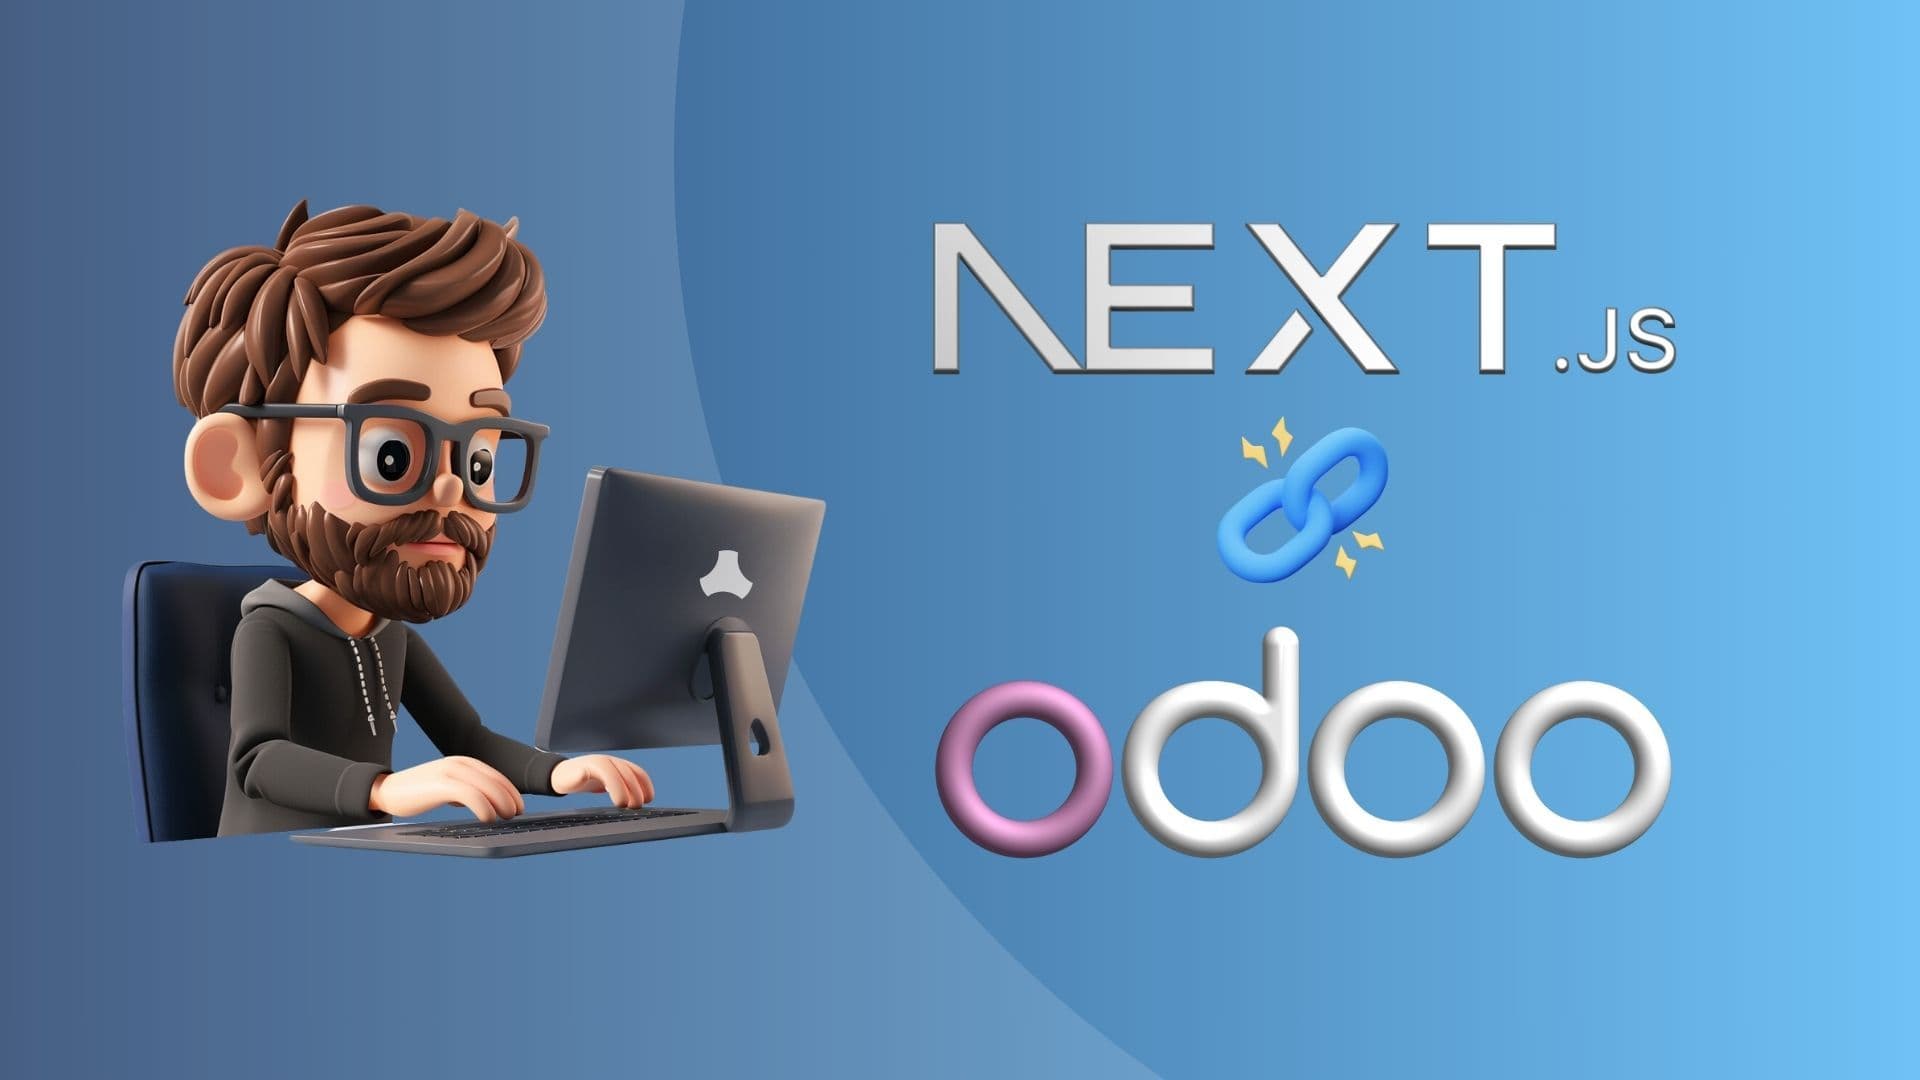 Next.js website with Odoo